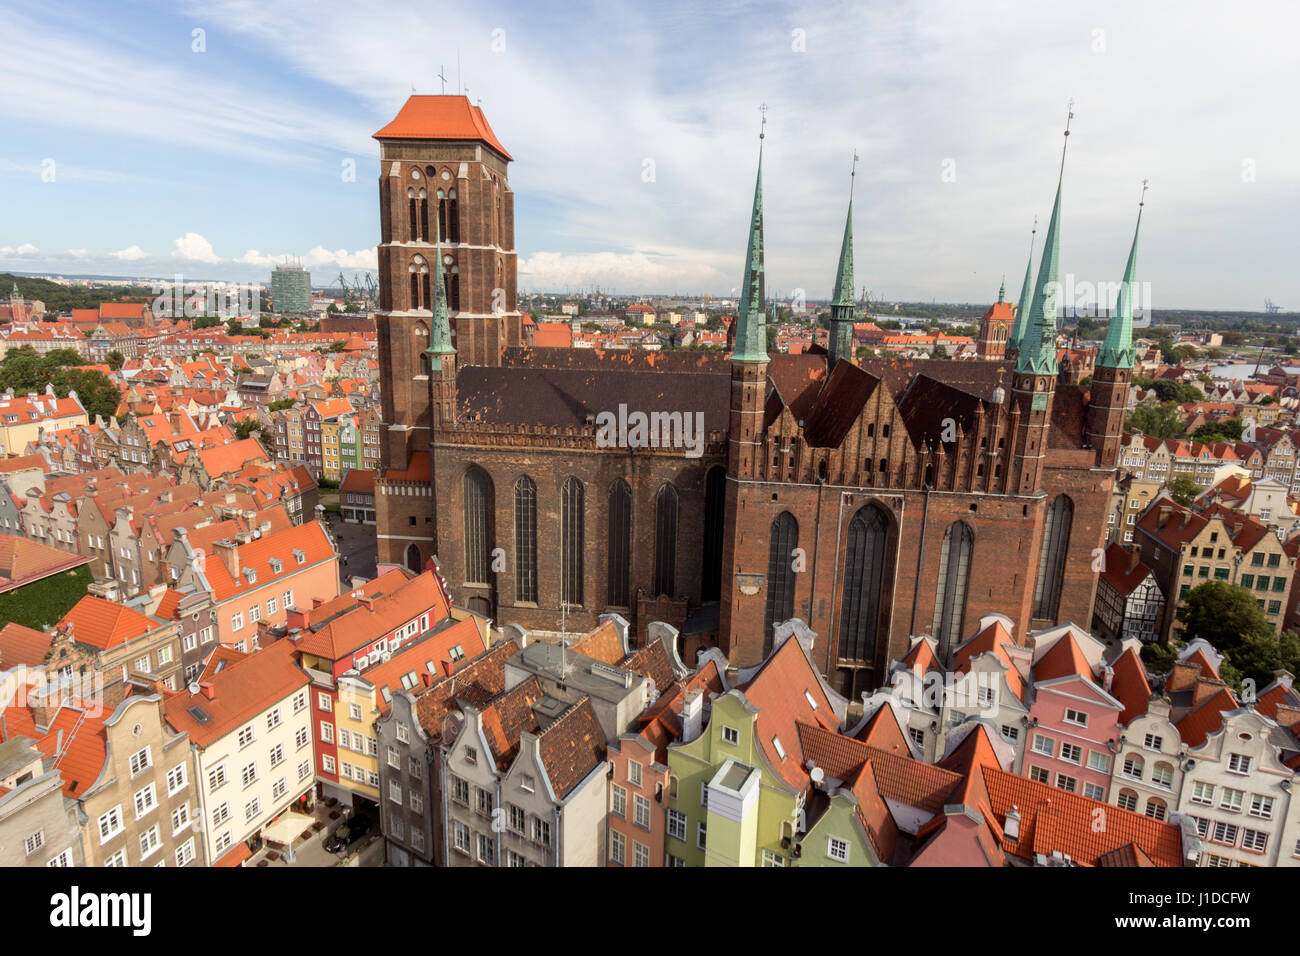 Vue sur la ville de Gdansk en Pologne. La ville est la capitale historique de la Polish occidentale avec l'architecture de la vieille ville médiévale. Banque D'Images